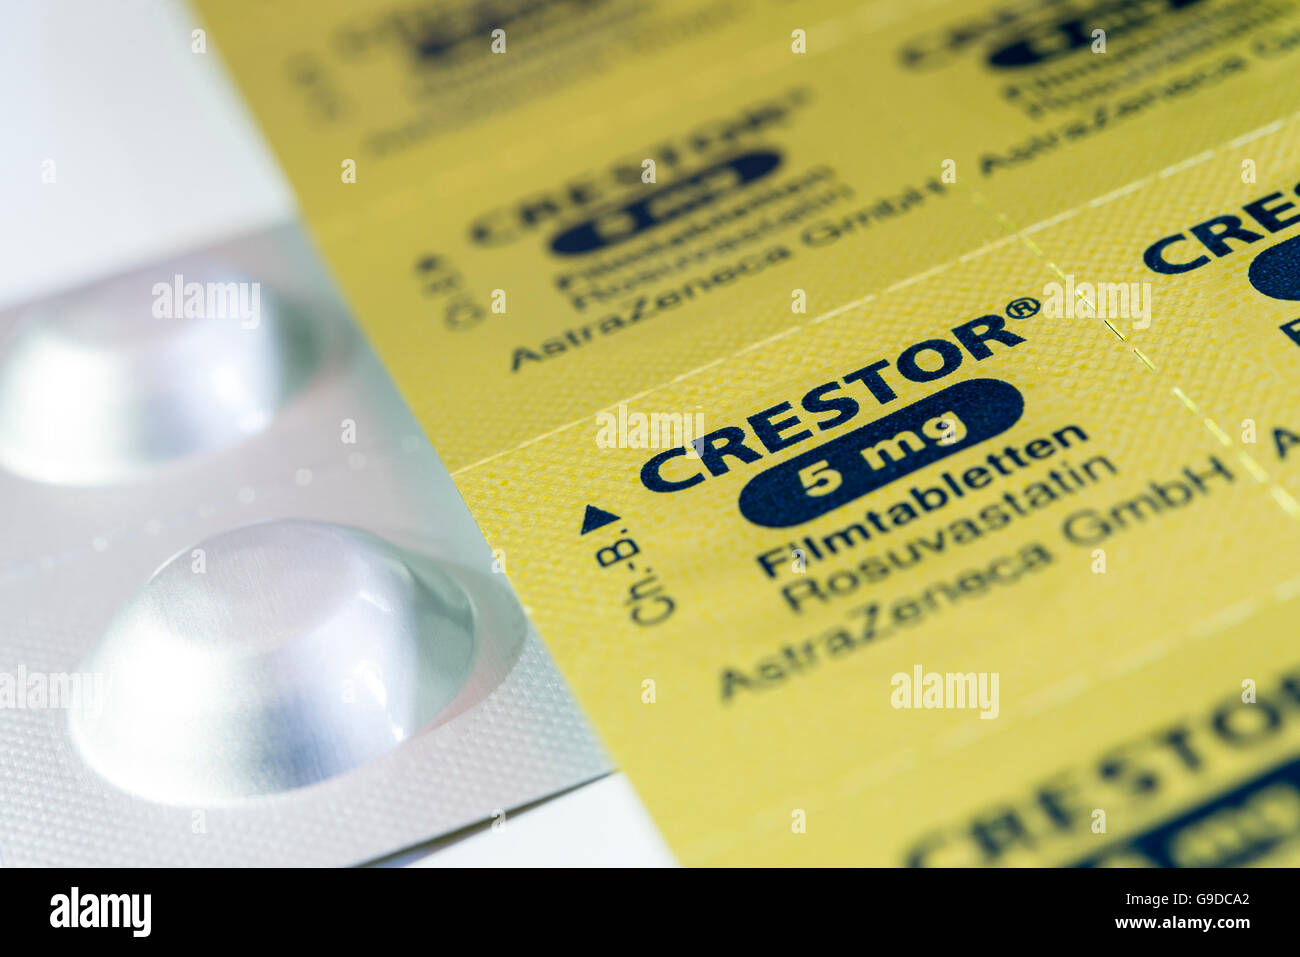 Folie-Blister-Packung für Crestor gebrandmarkt Statine Cholesterin Pillen. Stockfoto